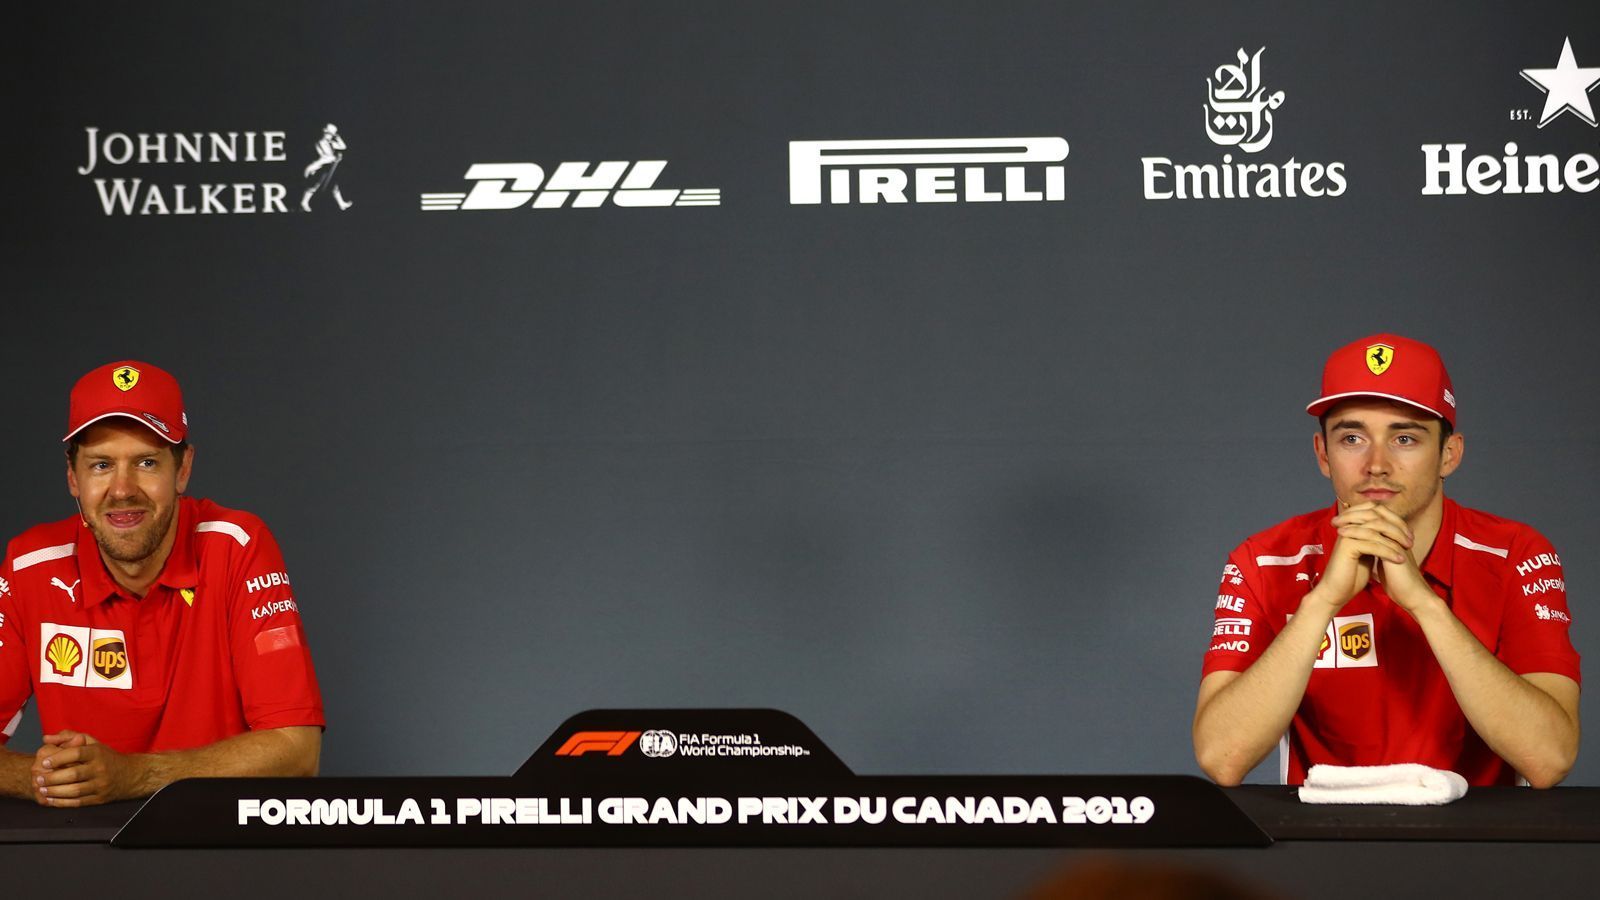 
                <strong>Ferraris neue Hoffnung: Charles Leclerc</strong><br>
                Sebastian Vettels Teamkollege war eine der Überraschungen der vergangenen Saison: Platz vier in der Fahrerwertung und zwei Rennsiege, darunter Platz eins beim Ferrari Heimspiel in Monza. Der 22-Jährige ließ seinen erfahreneren Teamkollegen den Großteil der Saison hinter sich und lief Vettel in der zweiten Saisonhälfte immer mehr den Status des ersten Fahrers ab. Ferrari rechnet sich für die Zukunft größere Chancen mit dem jungen Monegassen aus, offen ist hingegen ob Leclerc mit einem solchen Druck umgehen kann. Er geht in seine erst dritte Formel 1-Saison und zeigte bei einigen Rennen im vergangenen Jahr Nerven, läuft für ihn alles richtig ist Leclerc aber auf jeden Fall ein Sieg-Kandidat.
              